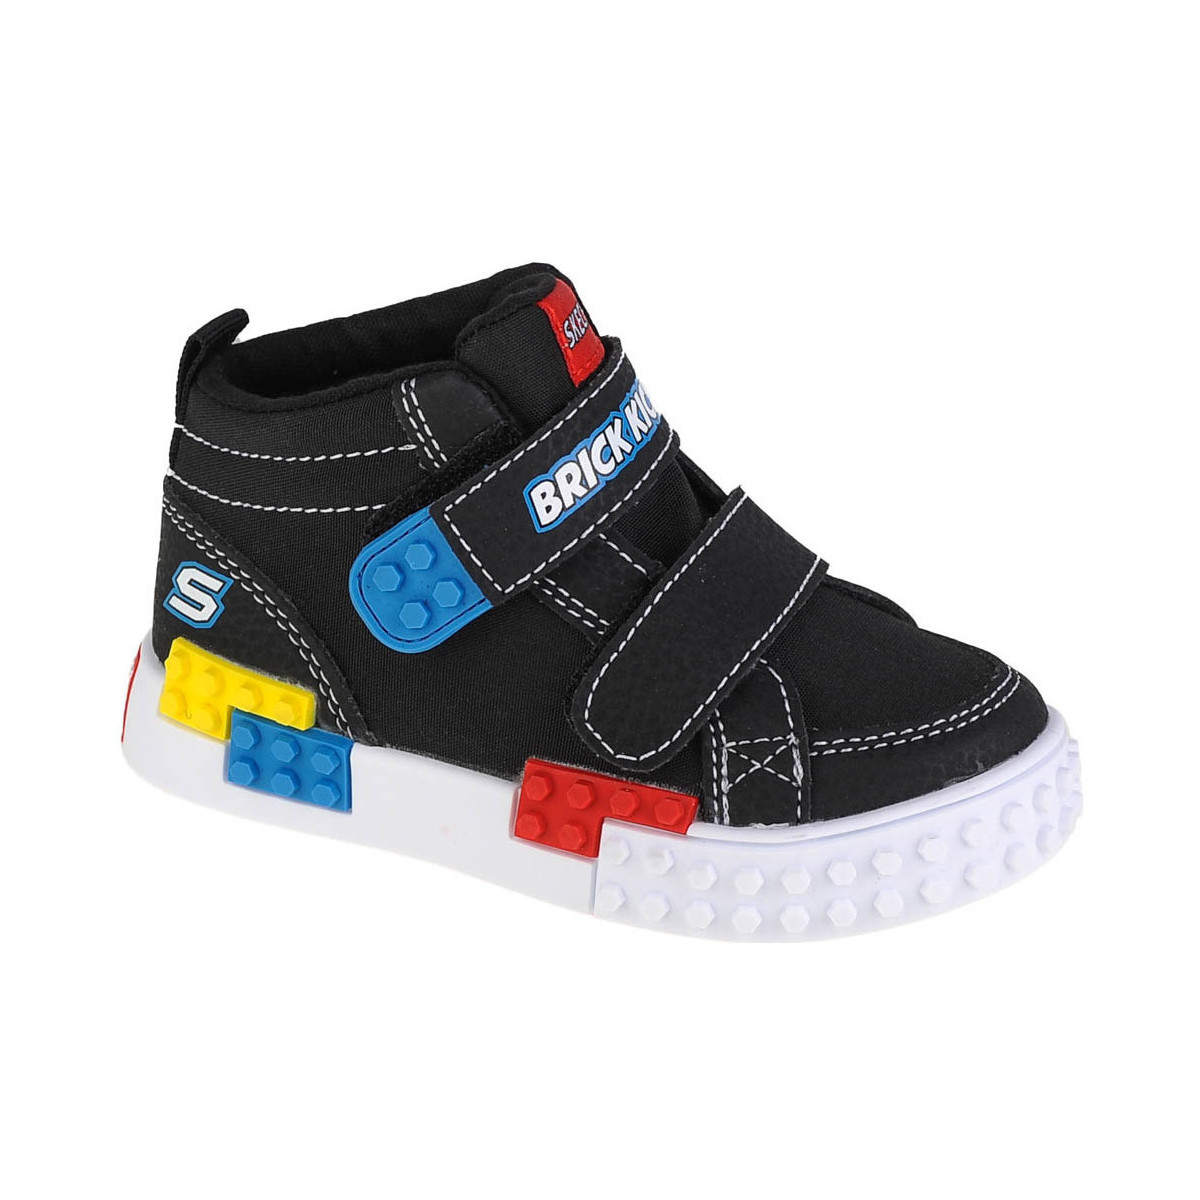 Sko Dreng Lave sneakers Skechers Kool Bricks-Lil Constructor Sort